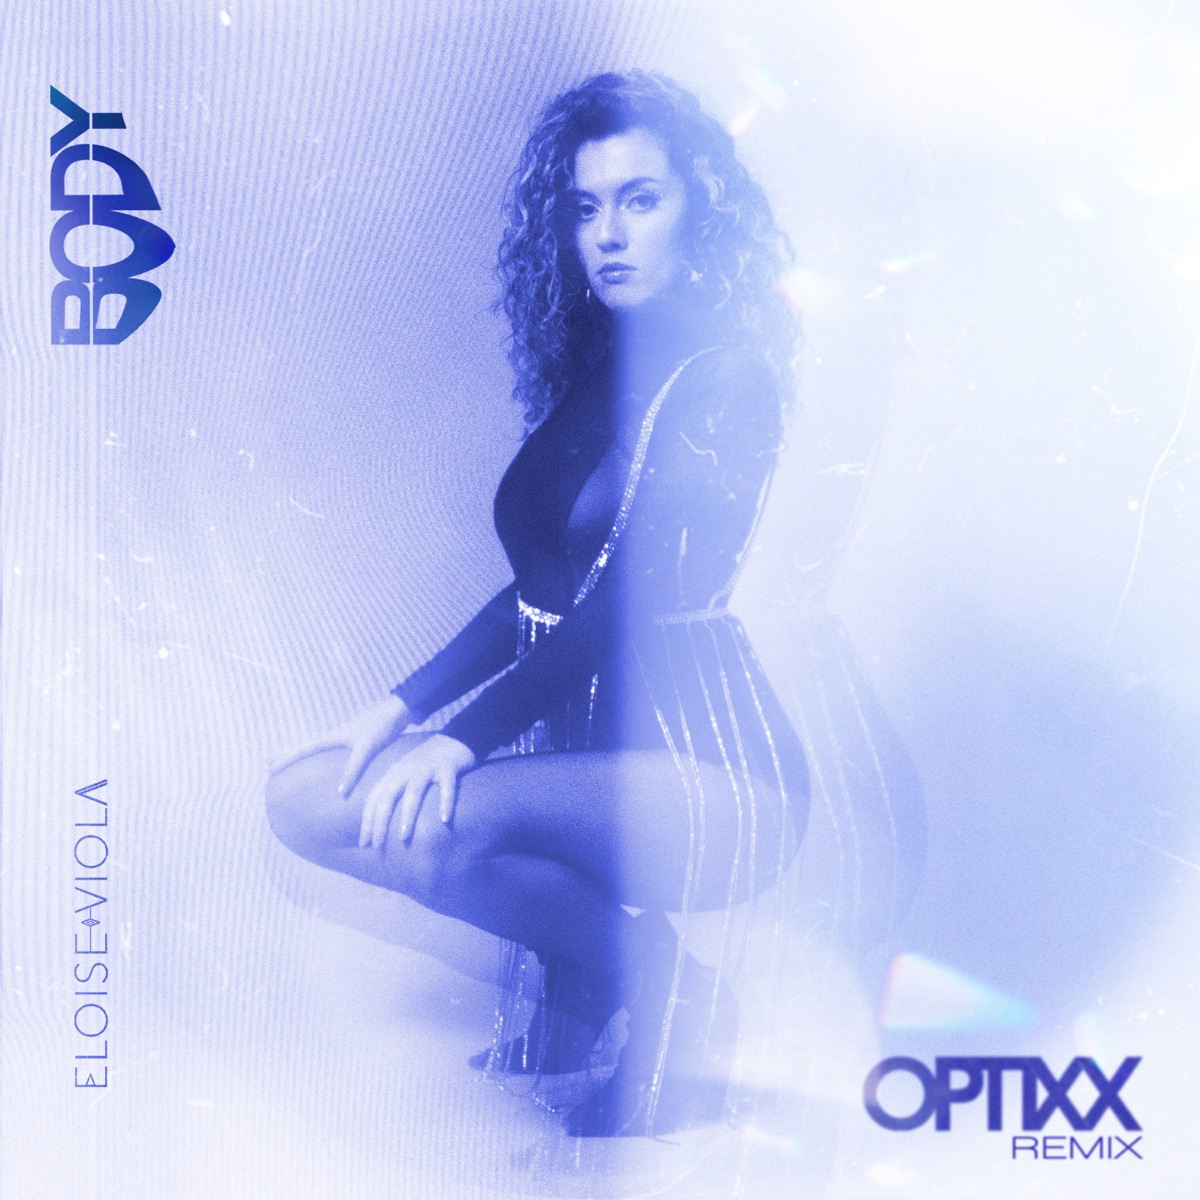 Eloise Viola — B.O.D.Y. (Optixx Remix) cover artwork